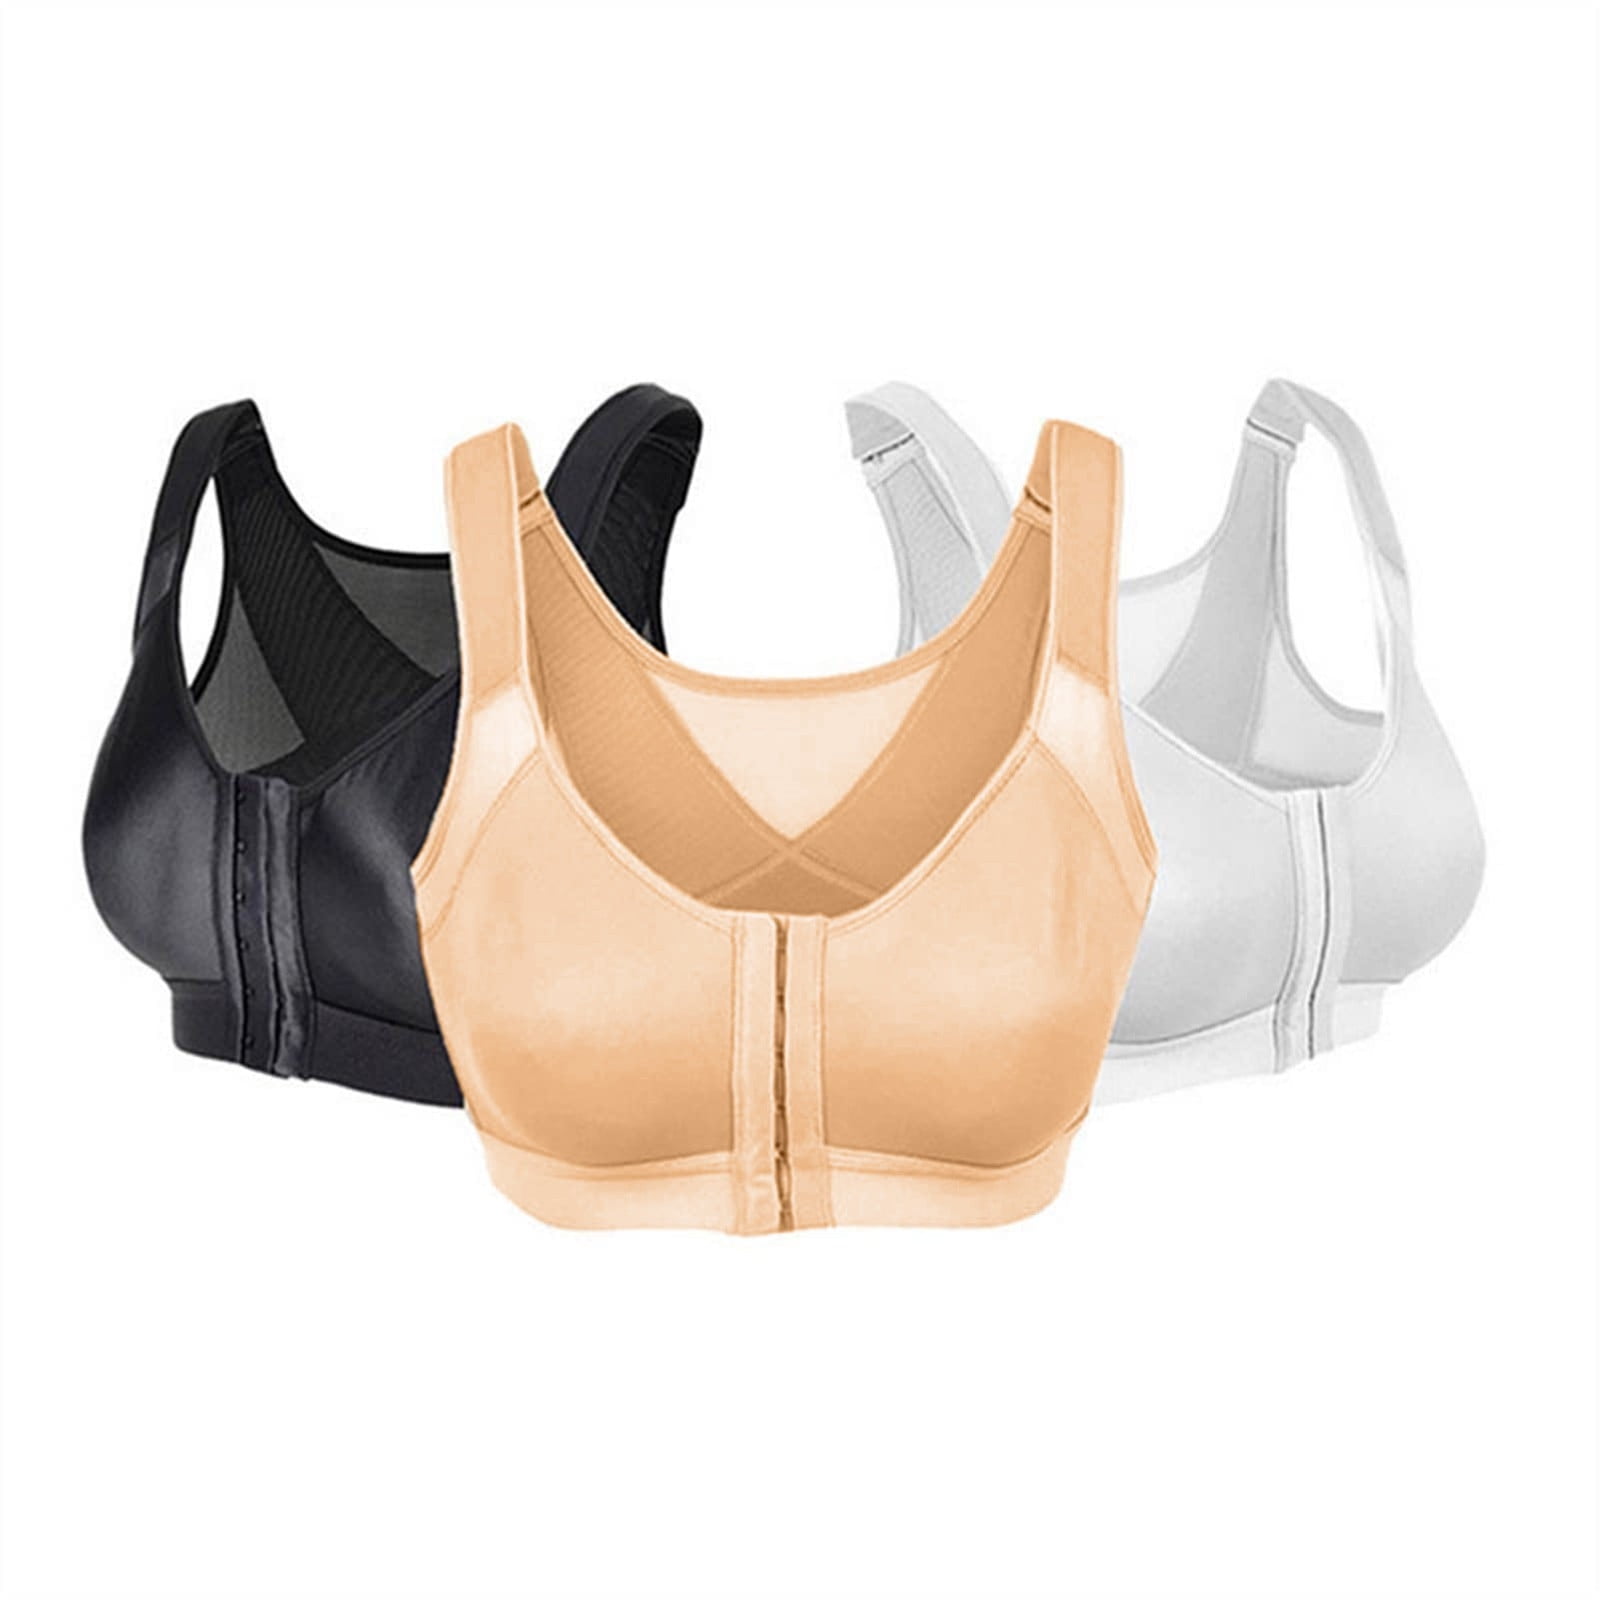 wozhidaoke bras for women bra for seniors front closure sora bra for ...